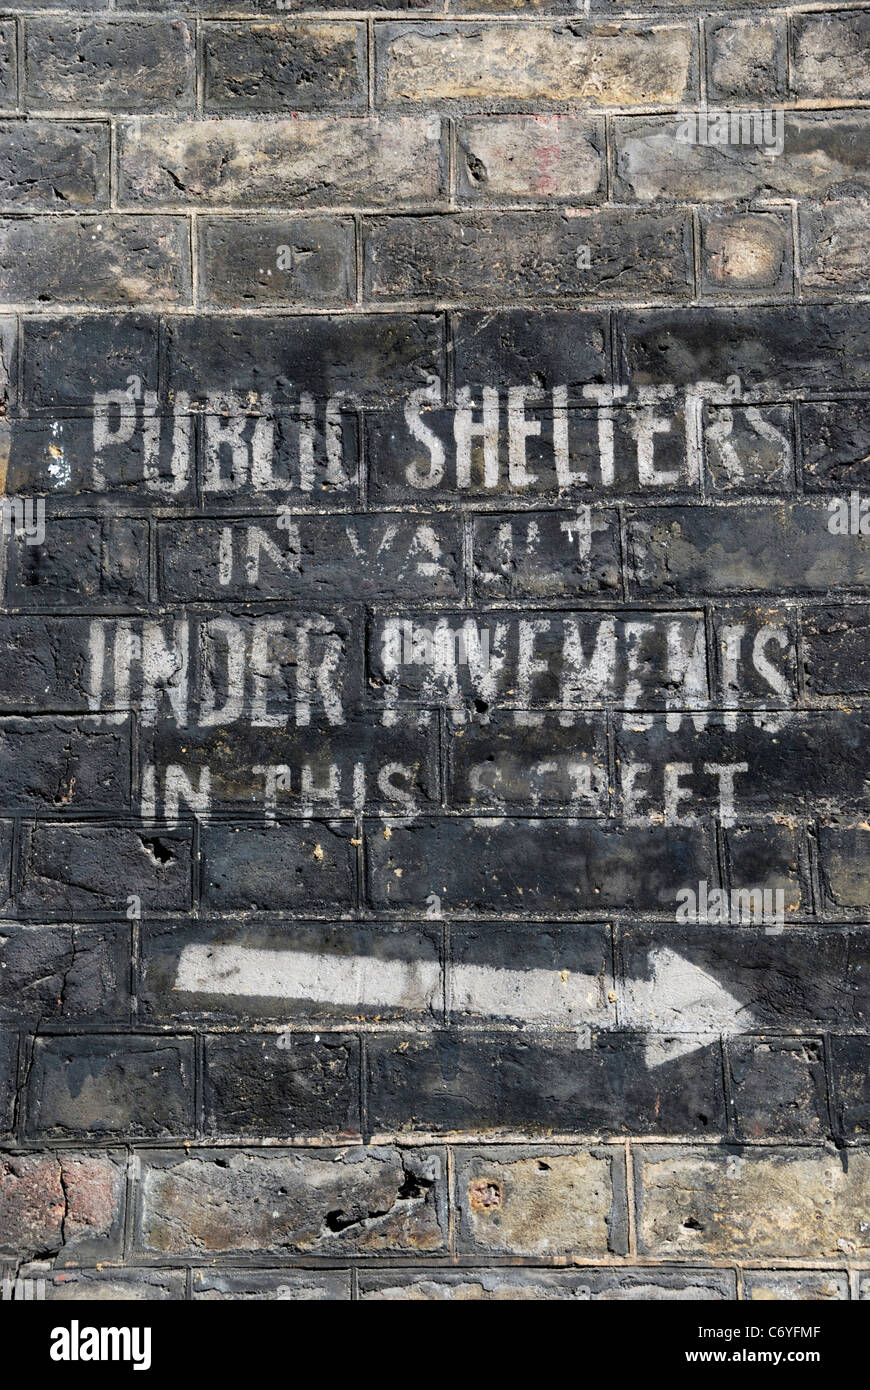 Old World War II signe indiquant la présence d'abris antiaériens public, Lord North Street, Westminster, Londres, Angleterre. Banque D'Images